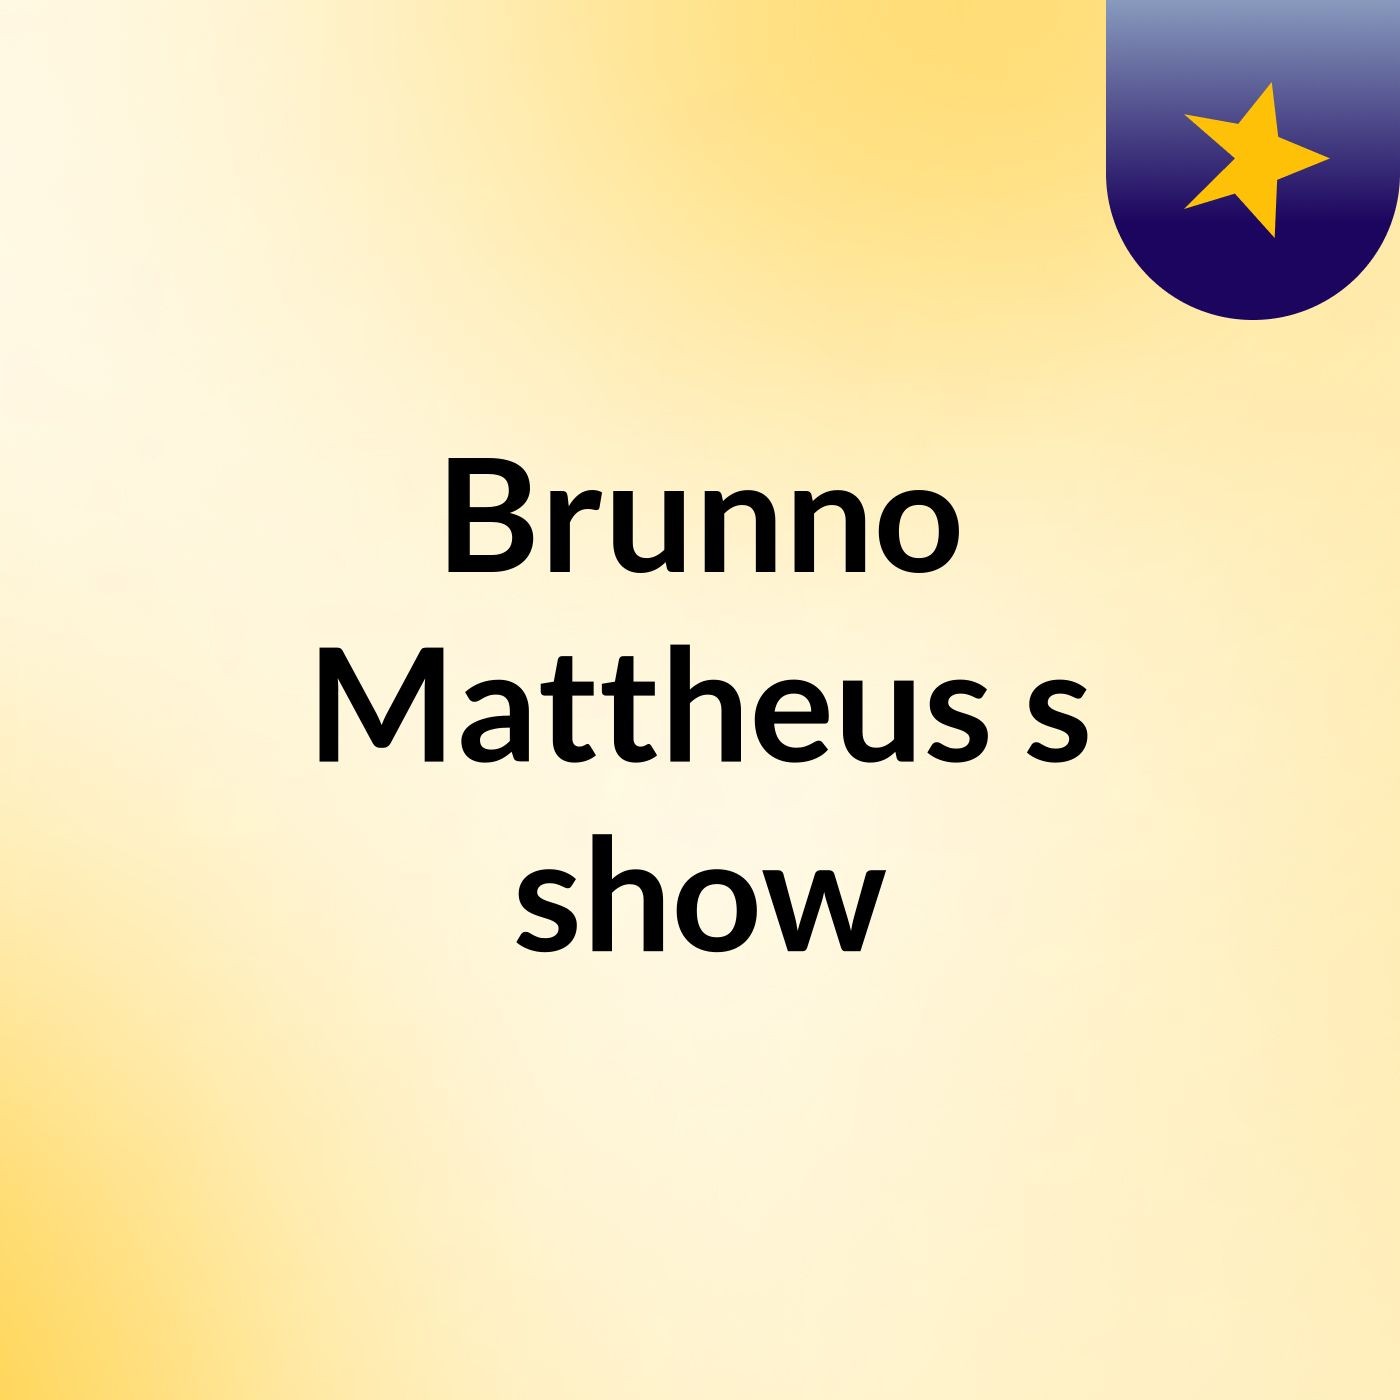 Brunno Mattheus's show